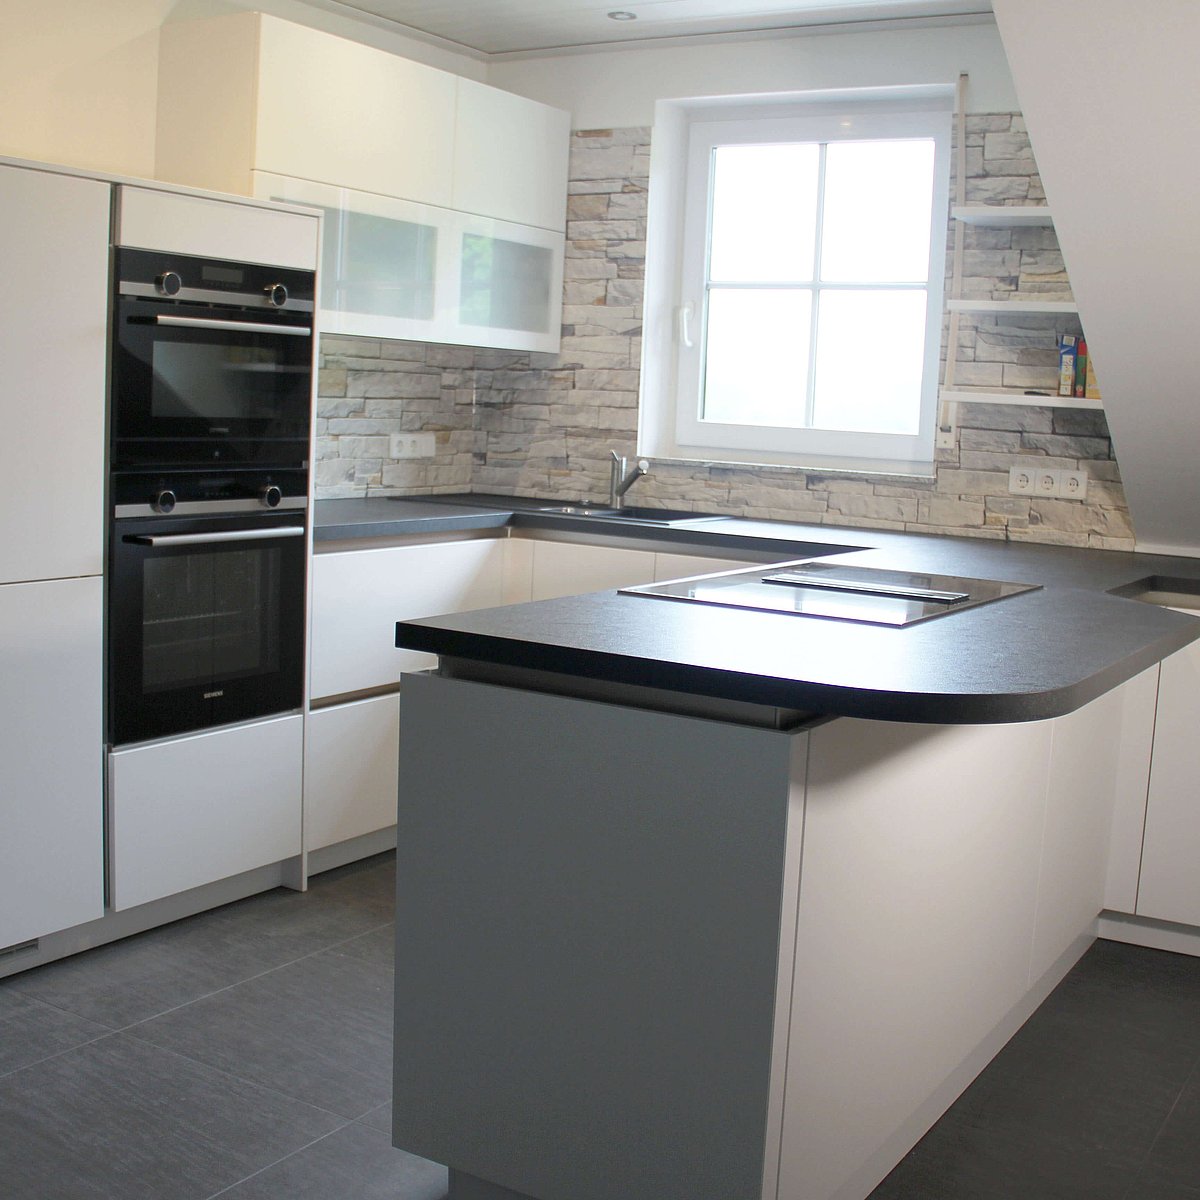 Küche in weiß mit Oberschränken mit Glasfront, Backofen und Halbinsel